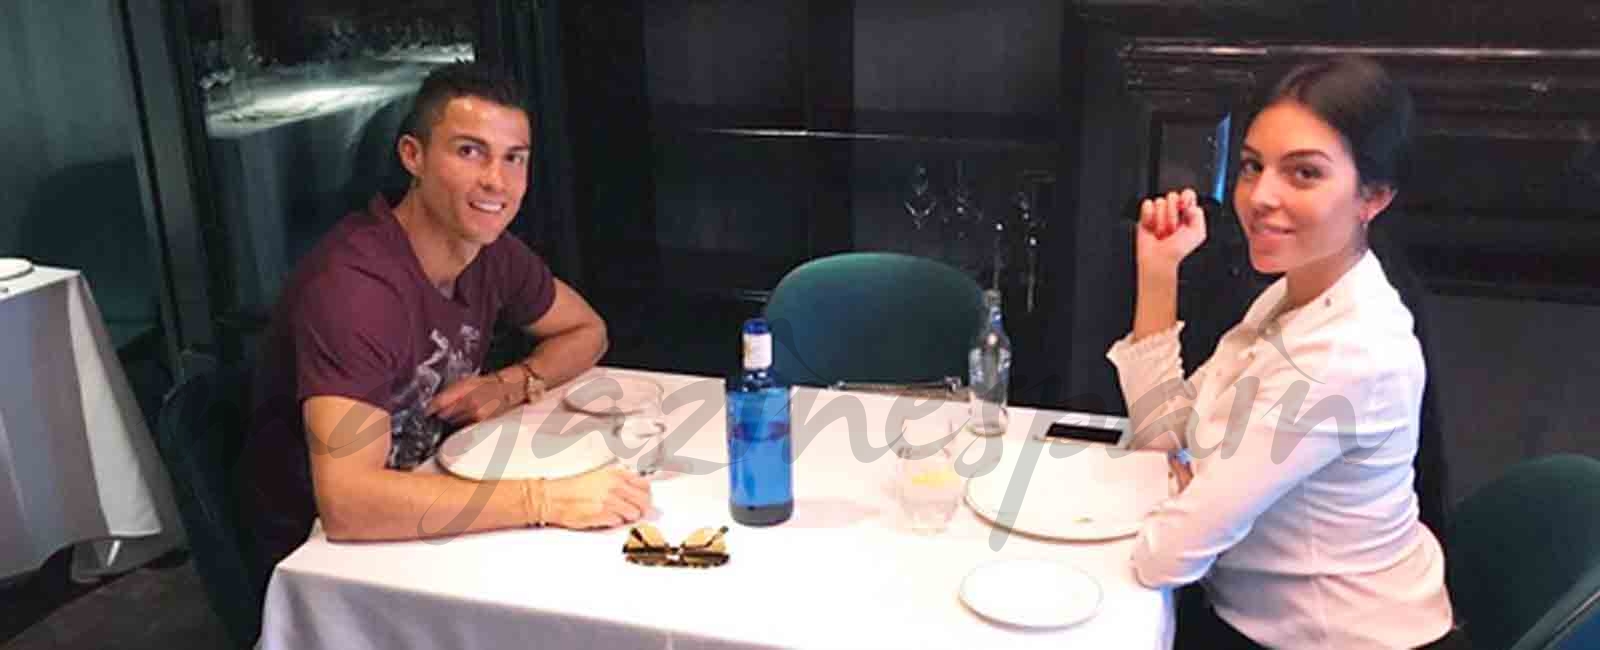 Cristiano Ronaldo y Georgina Rodríguez una pareja feliz